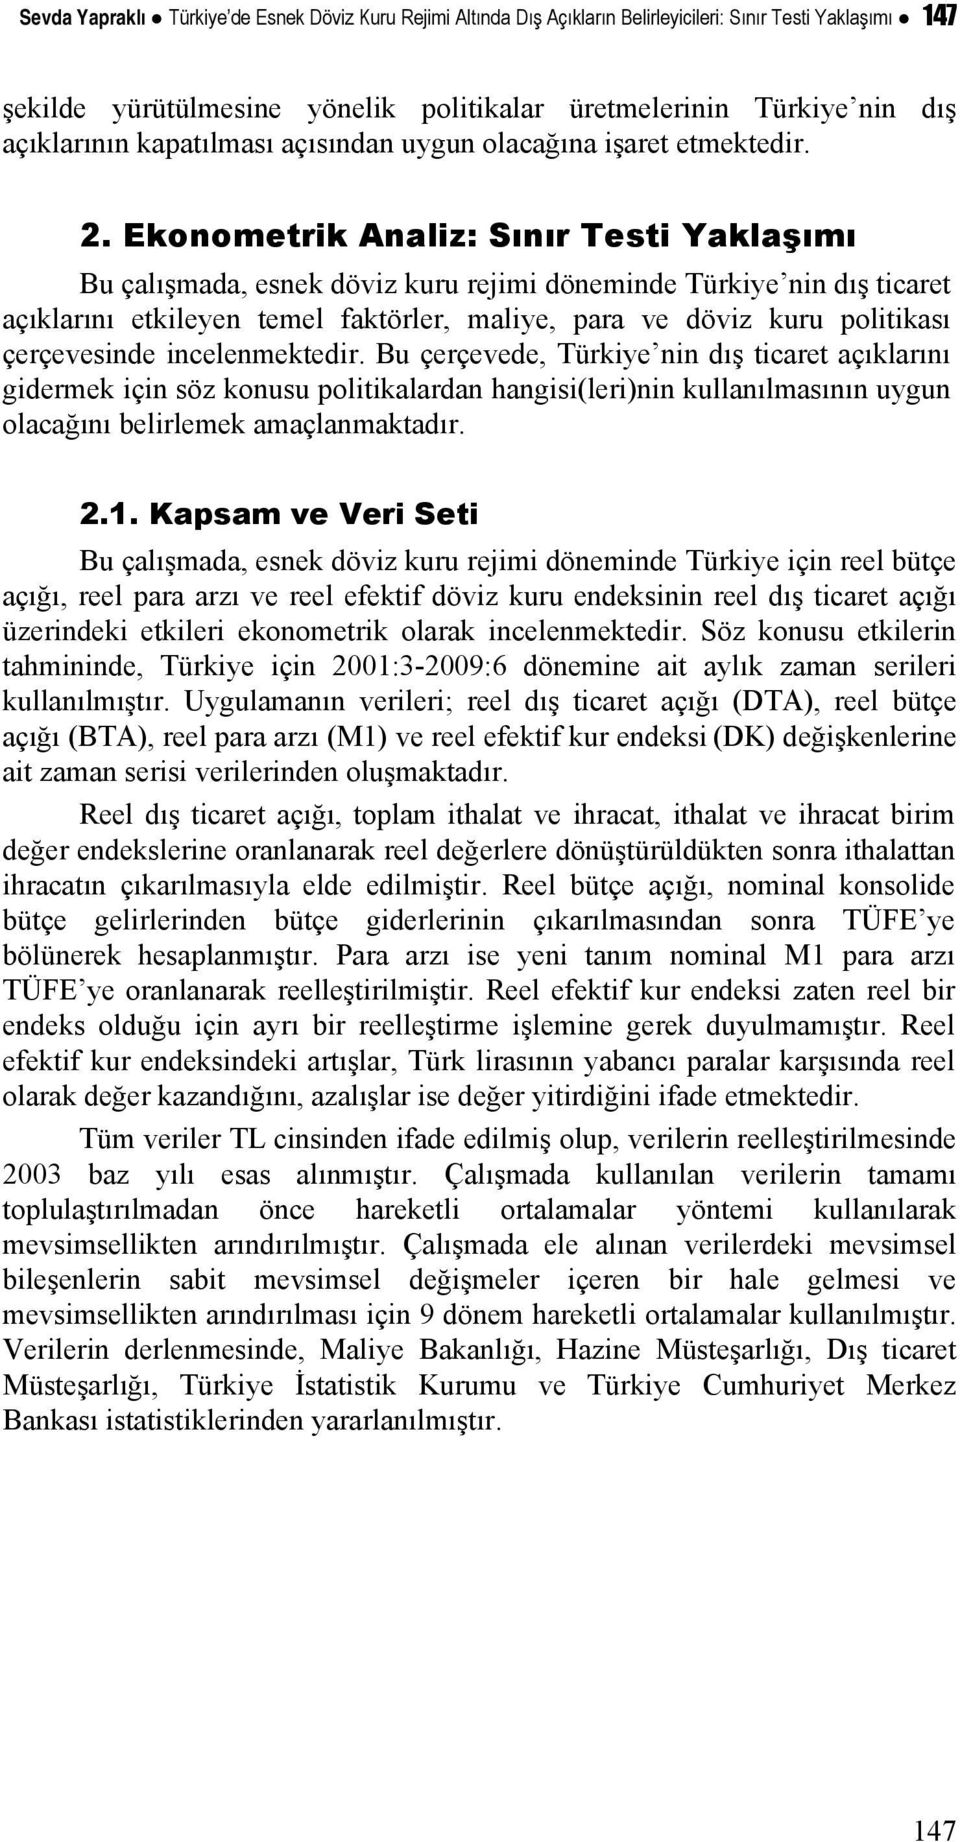 Ekonometrik Analiz: Sınır Testi Yaklaşımı Bu çalışmada, esnek döviz kuru rejimi döneminde Türkiye nin dış ticaret açıklarını etkileyen temel faktörler, maliye, para ve döviz kuru politikası